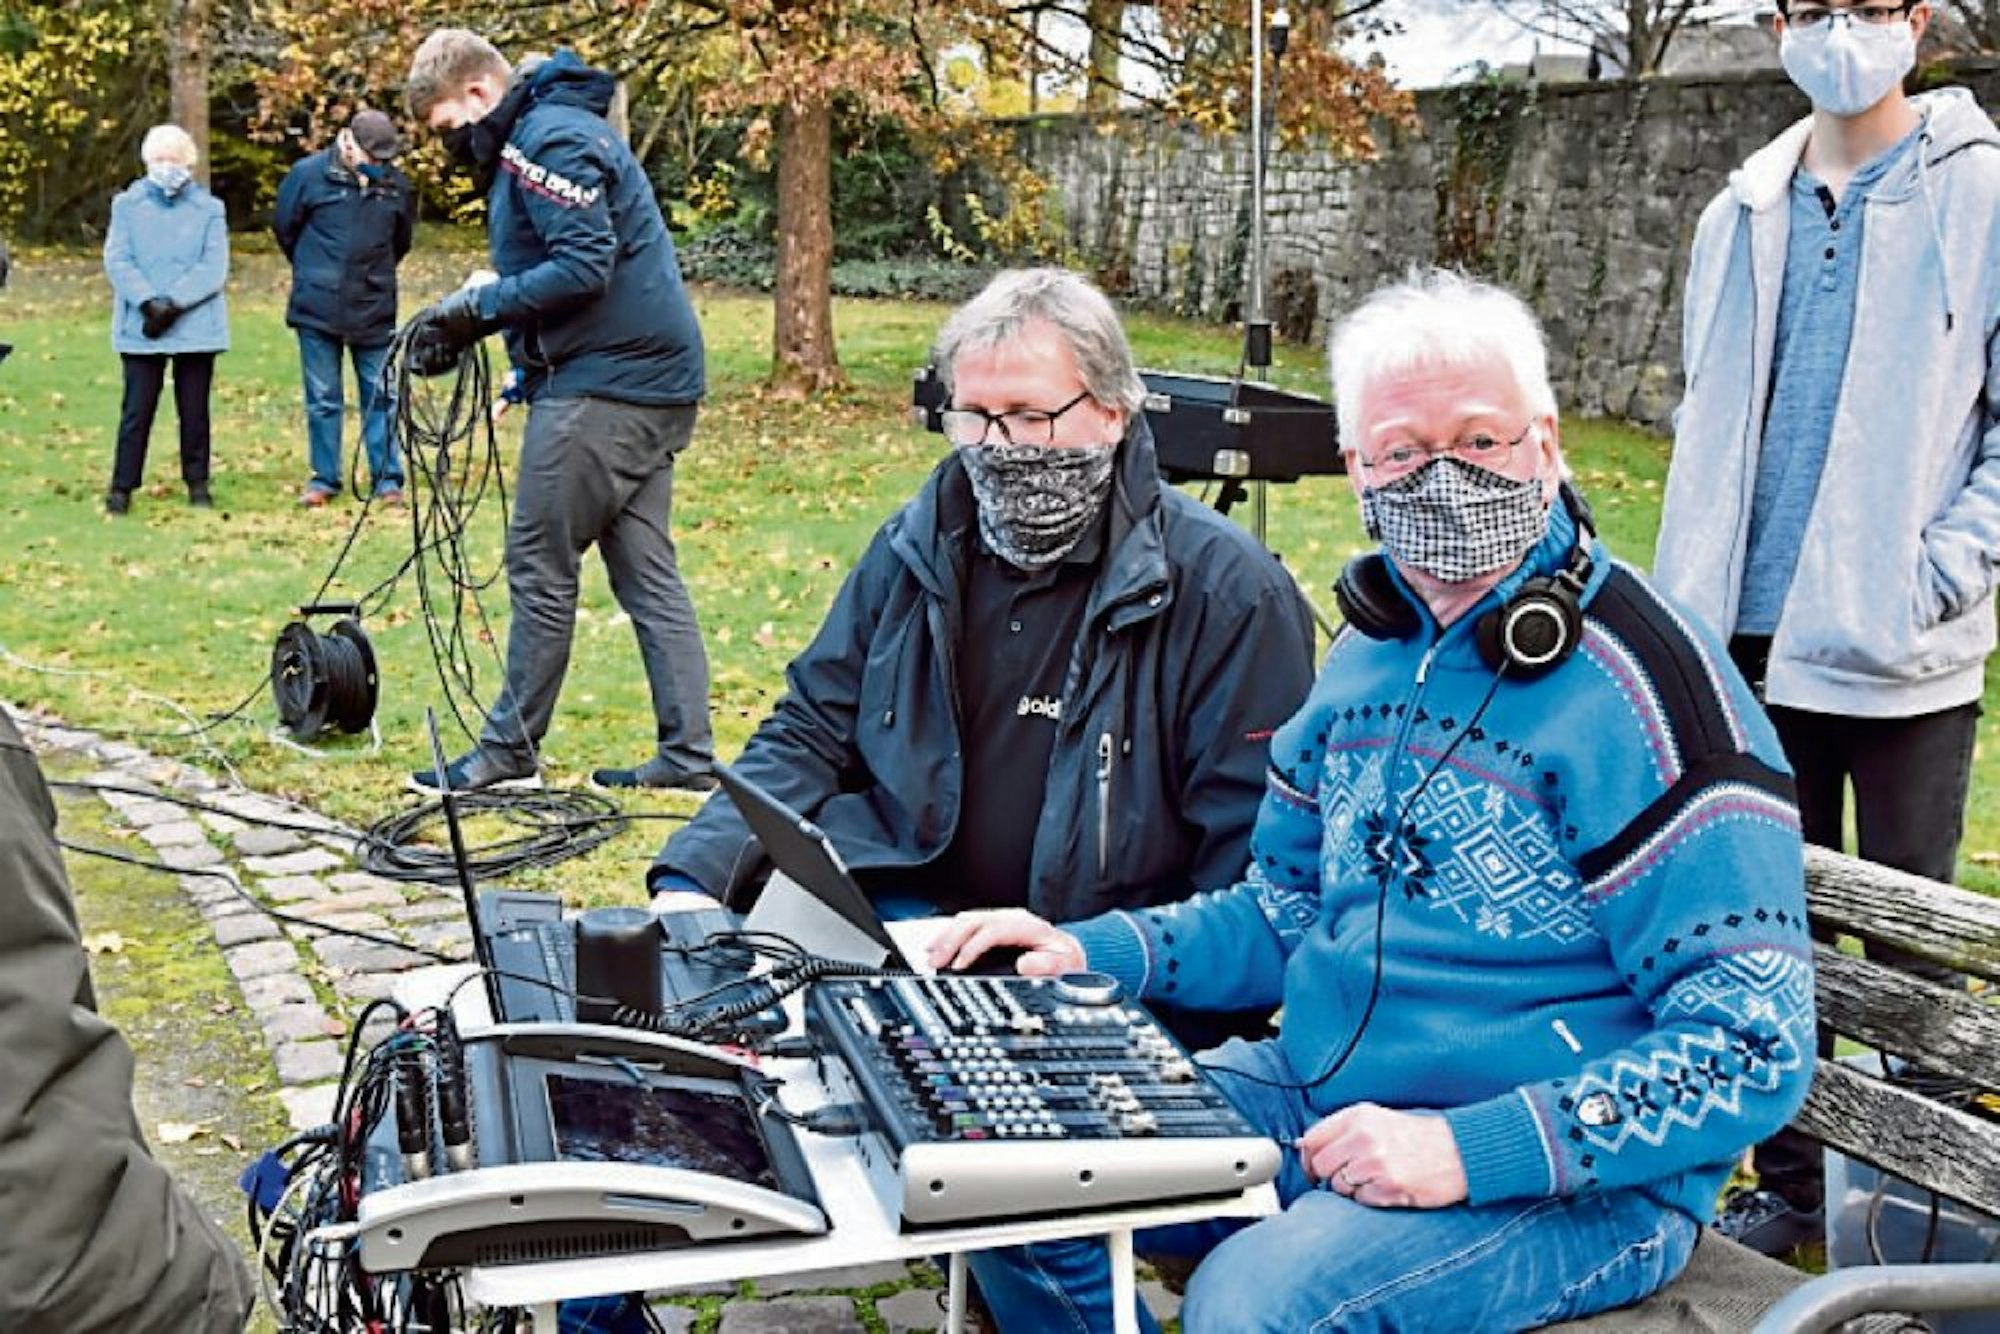 Spezialisten waren mit Andreas Müller-Goldkuhle (links) und Olaf Dung hinter der Kamera am Werk.